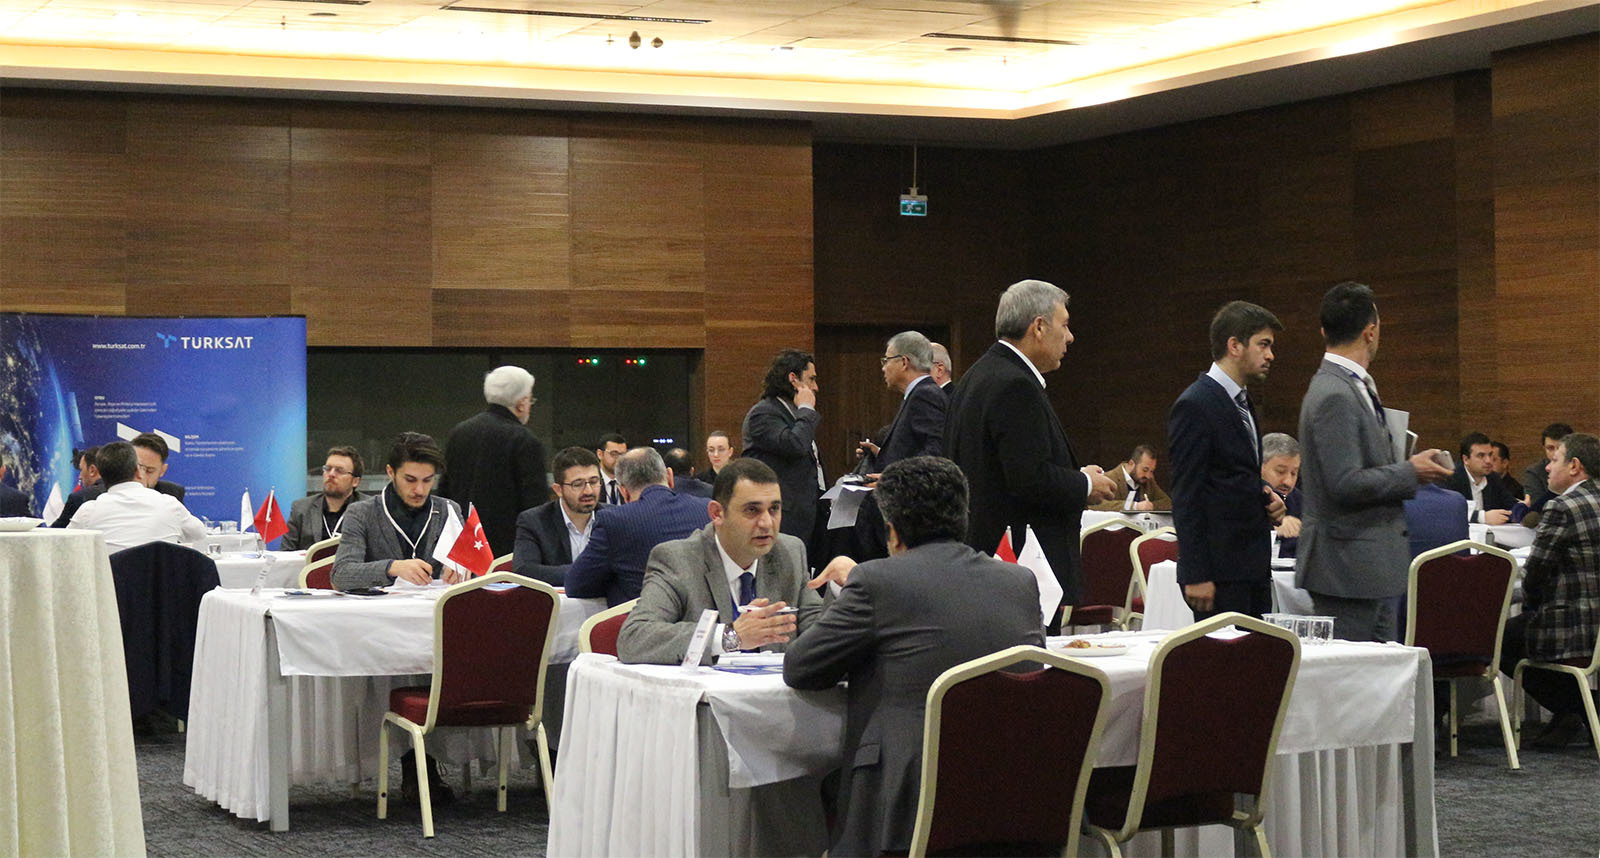 Türksat ile Teknopark Ankara işbirliği kapsamında firmaları bir araya getireceğimiz organizasyon 22 Mart Perşembe günü Teknopark Ankara konferans salonunda gerçekleştirilecektir.